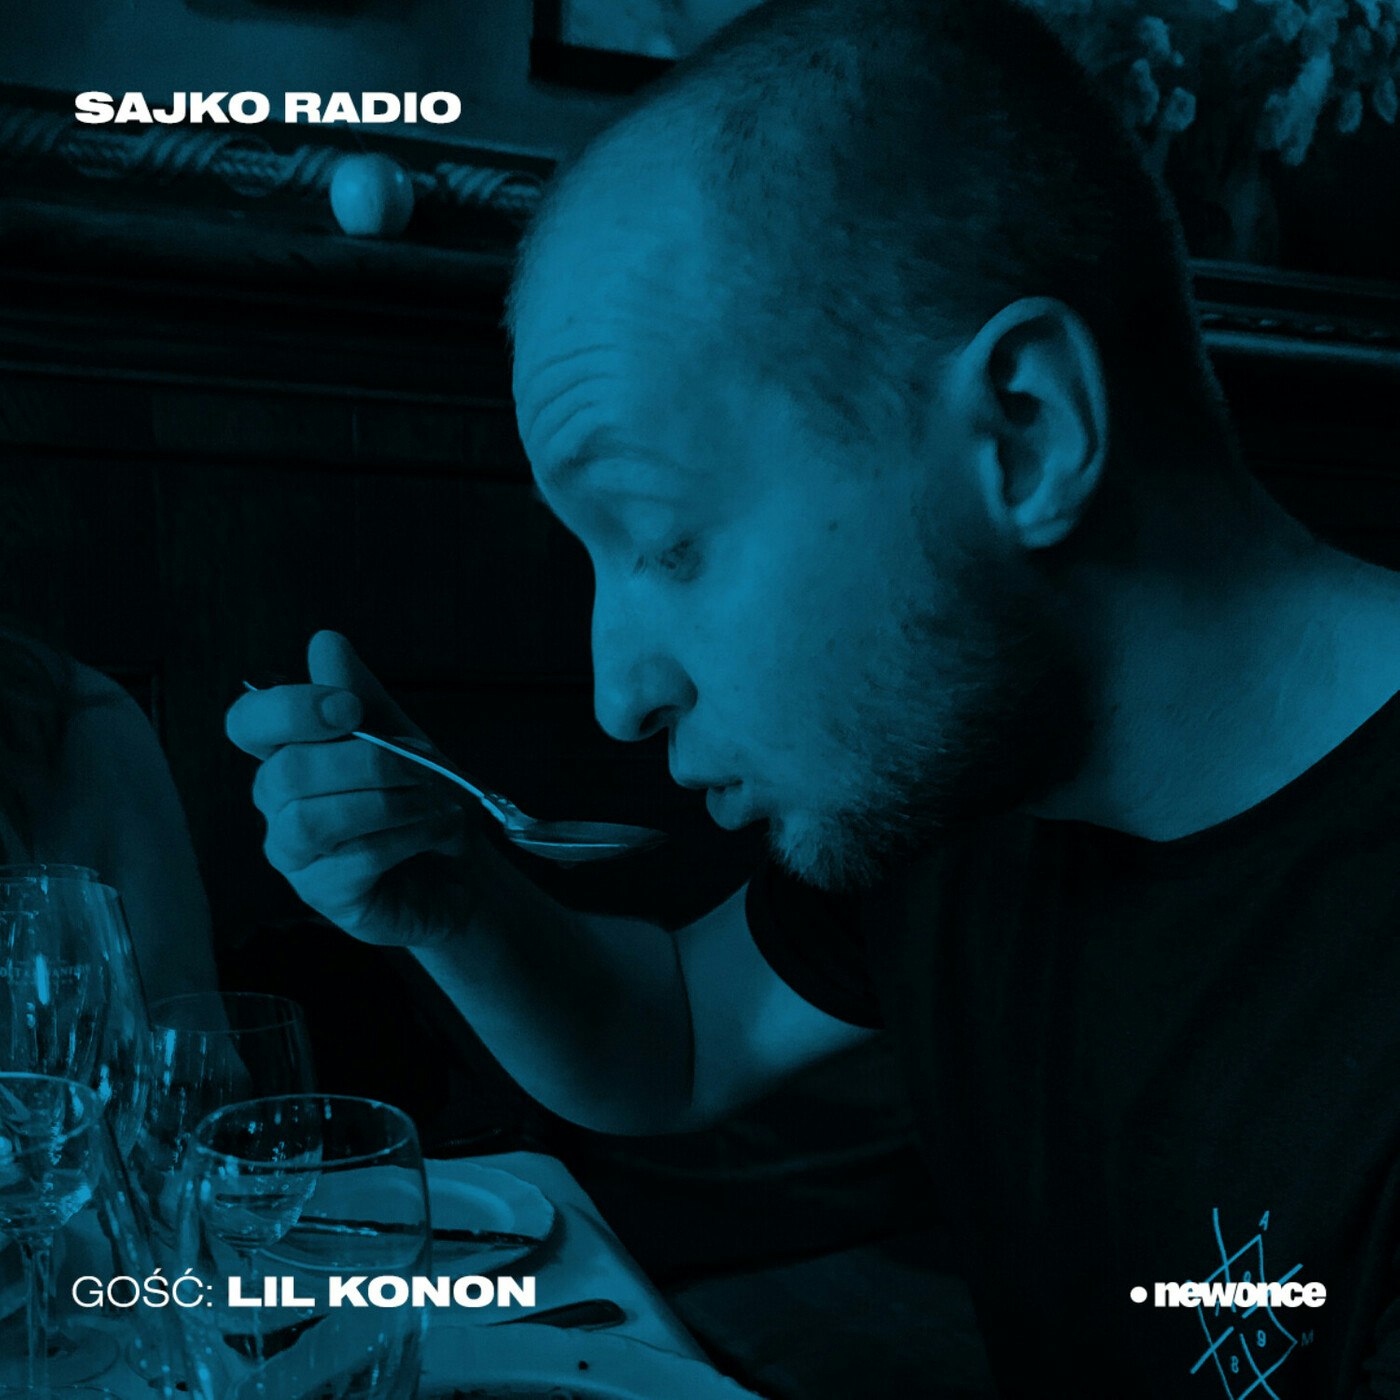 Sajko Radio